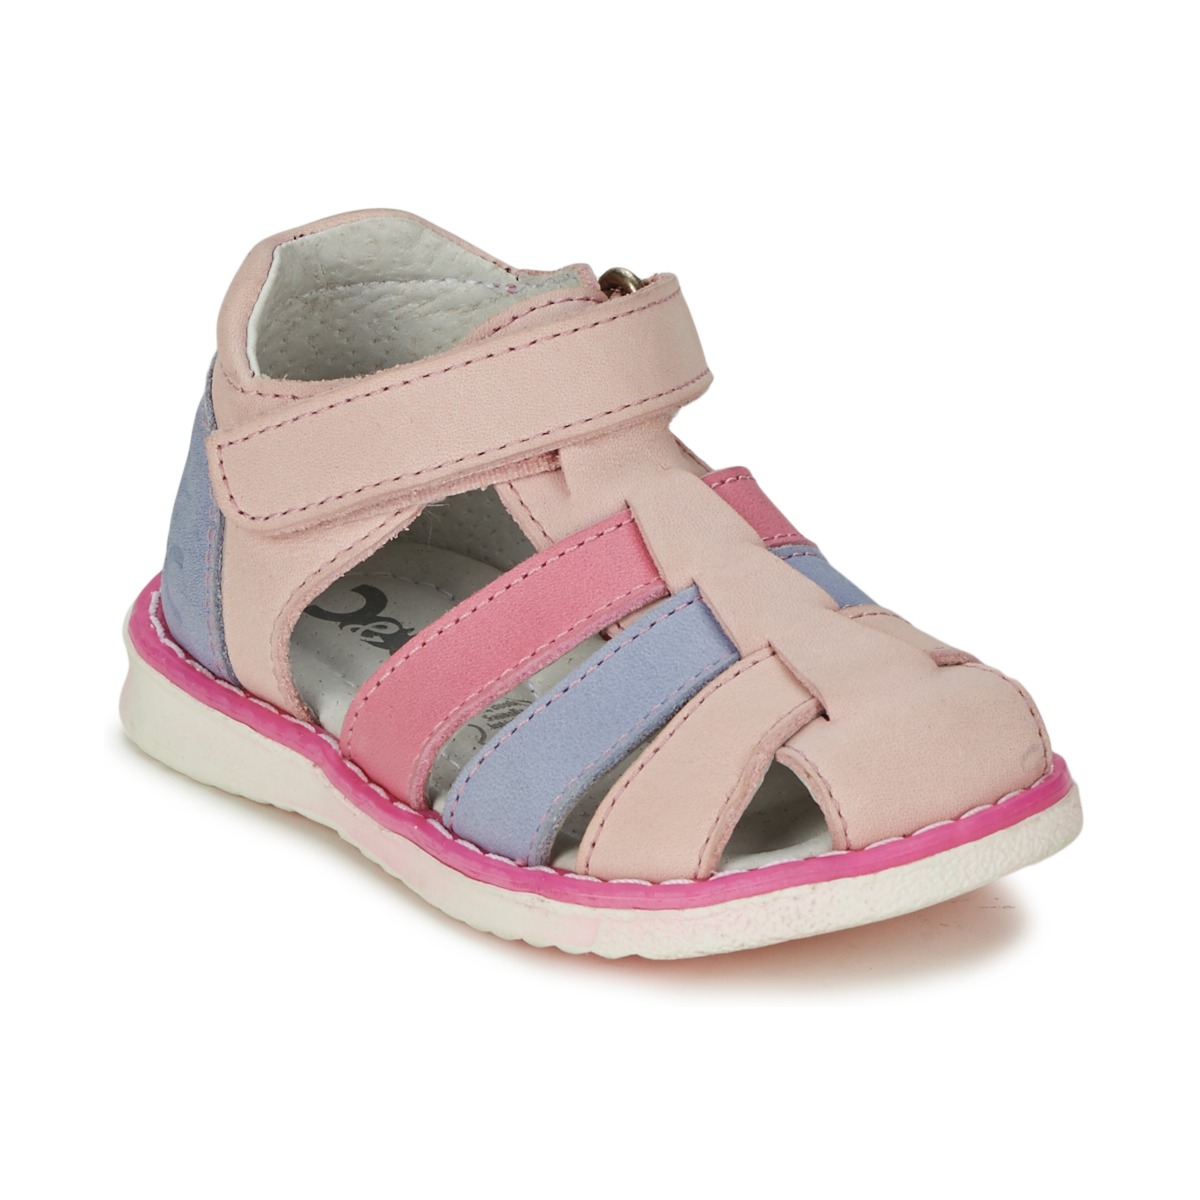 kengät Tytöt Sandaalit ja avokkaat Citrouille et Compagnie FRINOUI Vaaleanpunainen / Sininen / Clear / Fuksia